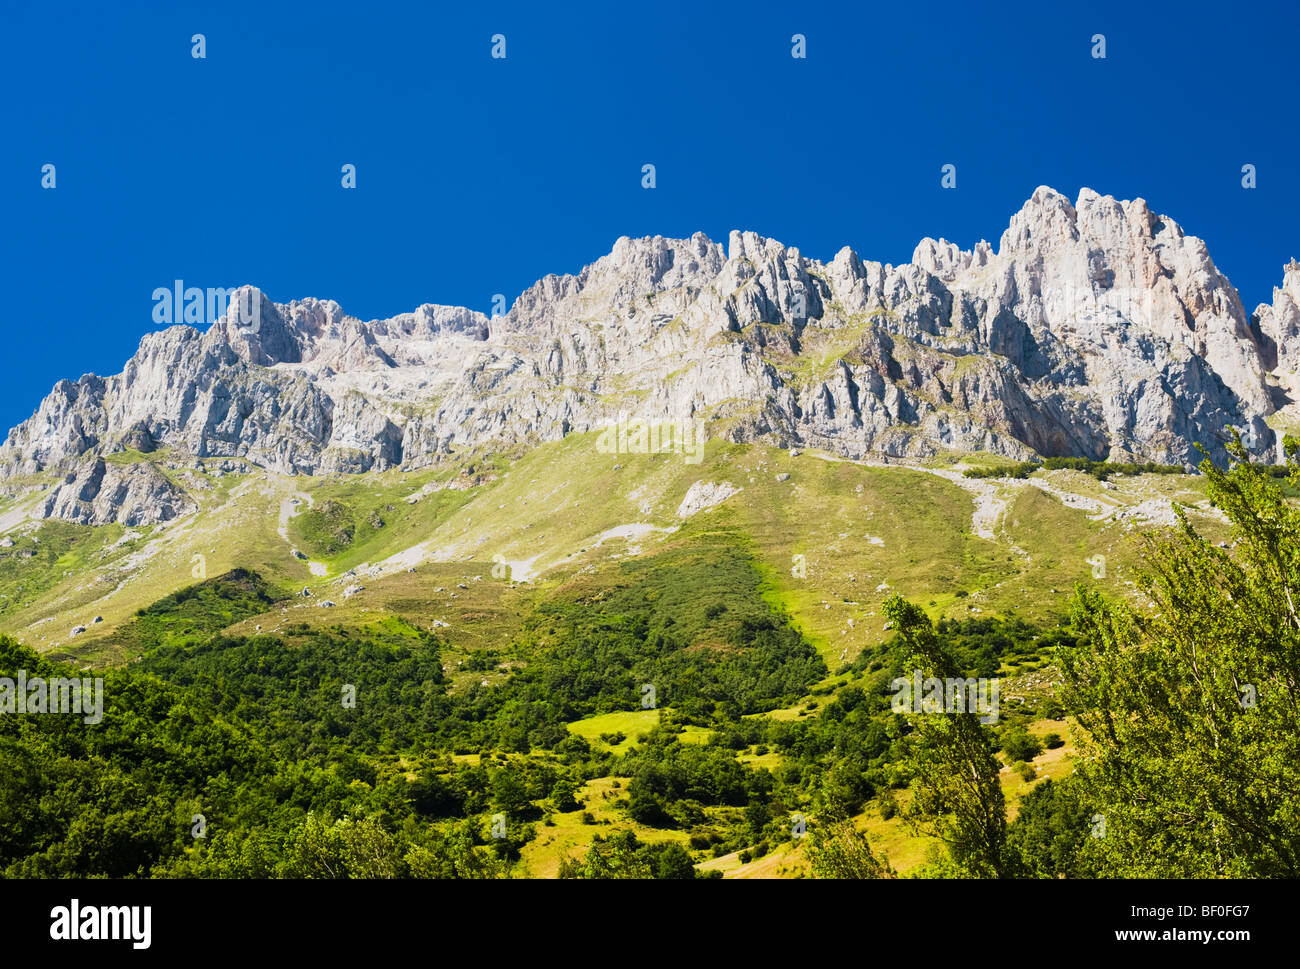 Picos de Europa from Posada de Valdeón, Cantabrian Mountains, northern Spain Stock Photo